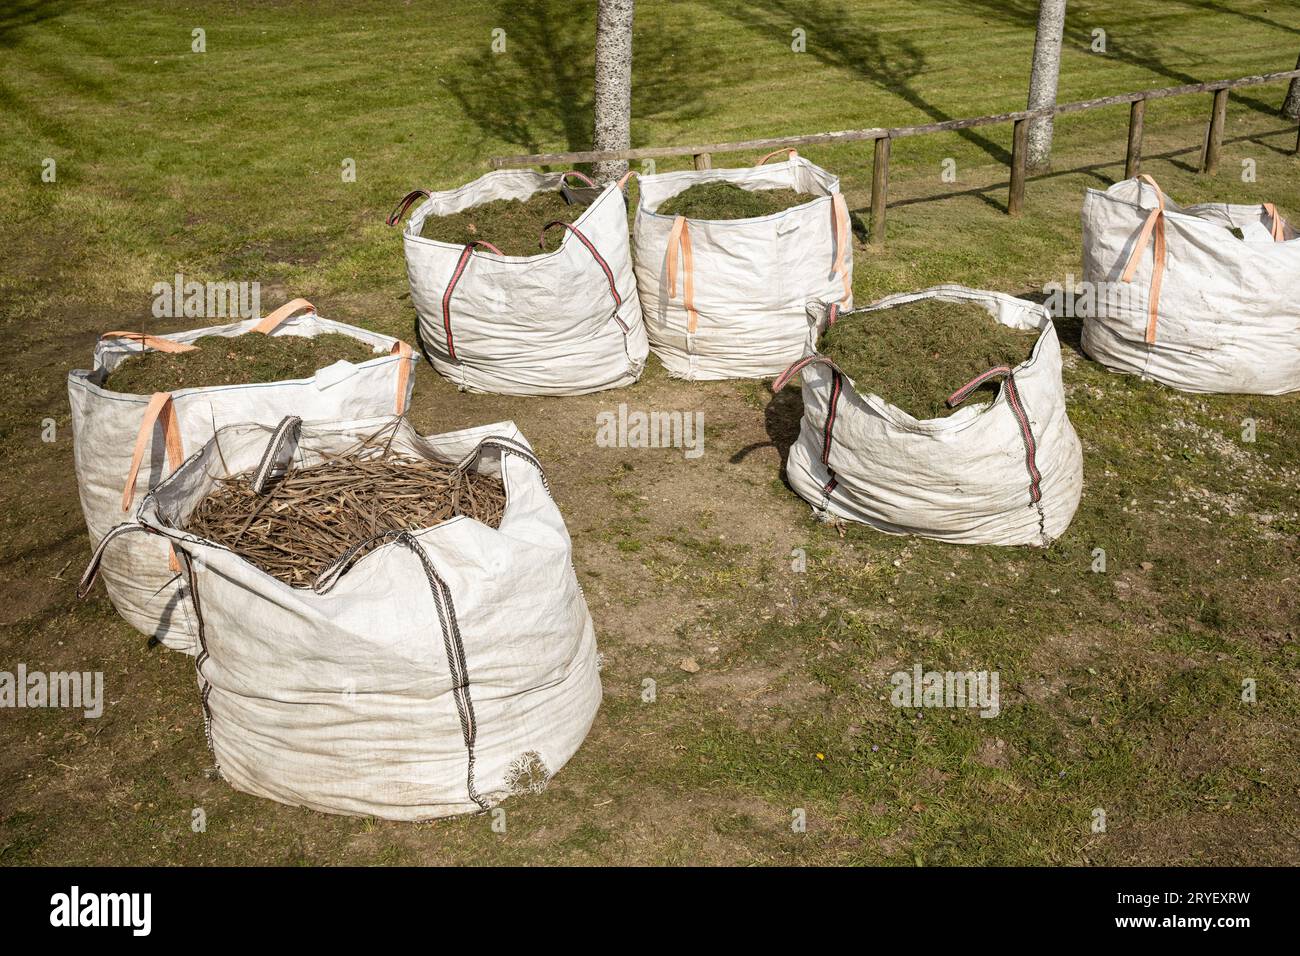 Gruppe von Säcken voll von geschnittenem Gras. Gartenarbeit in öffentlichen Räumen Stockfoto